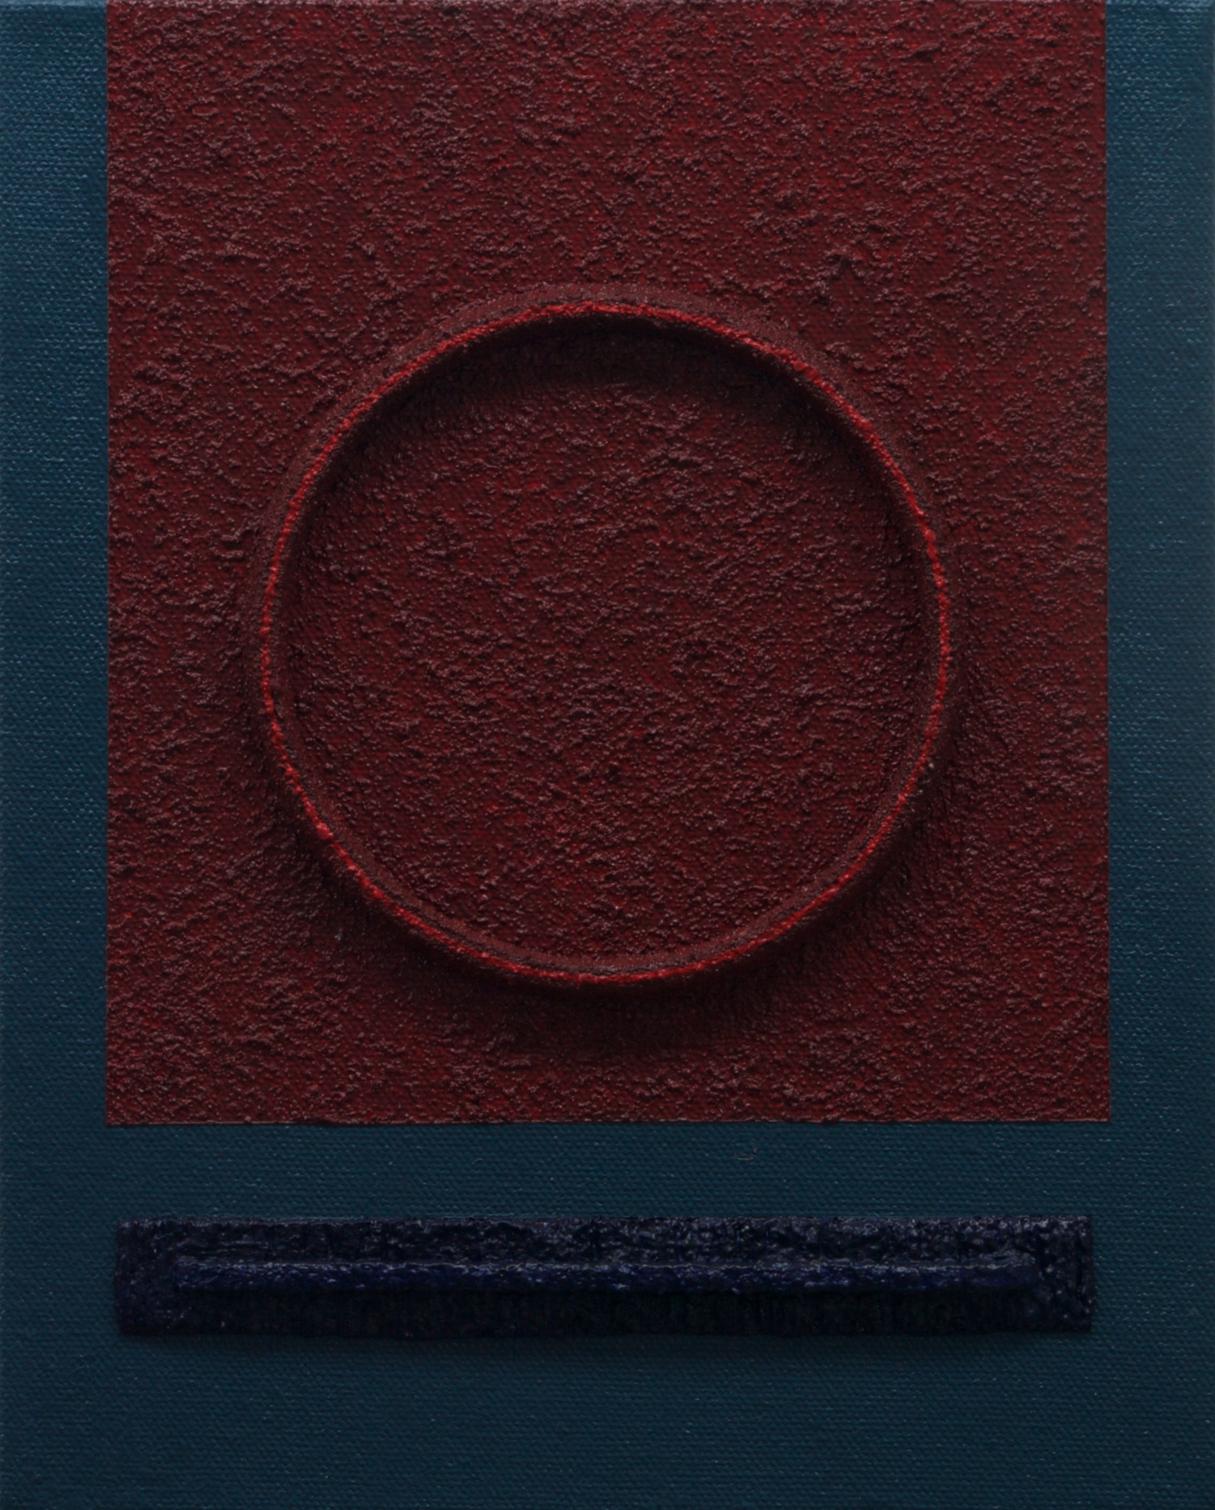 Abstract Painting Rich Moyers - IMMERSION - Peinture, acrylique sur toile, peinture abstraite 3D